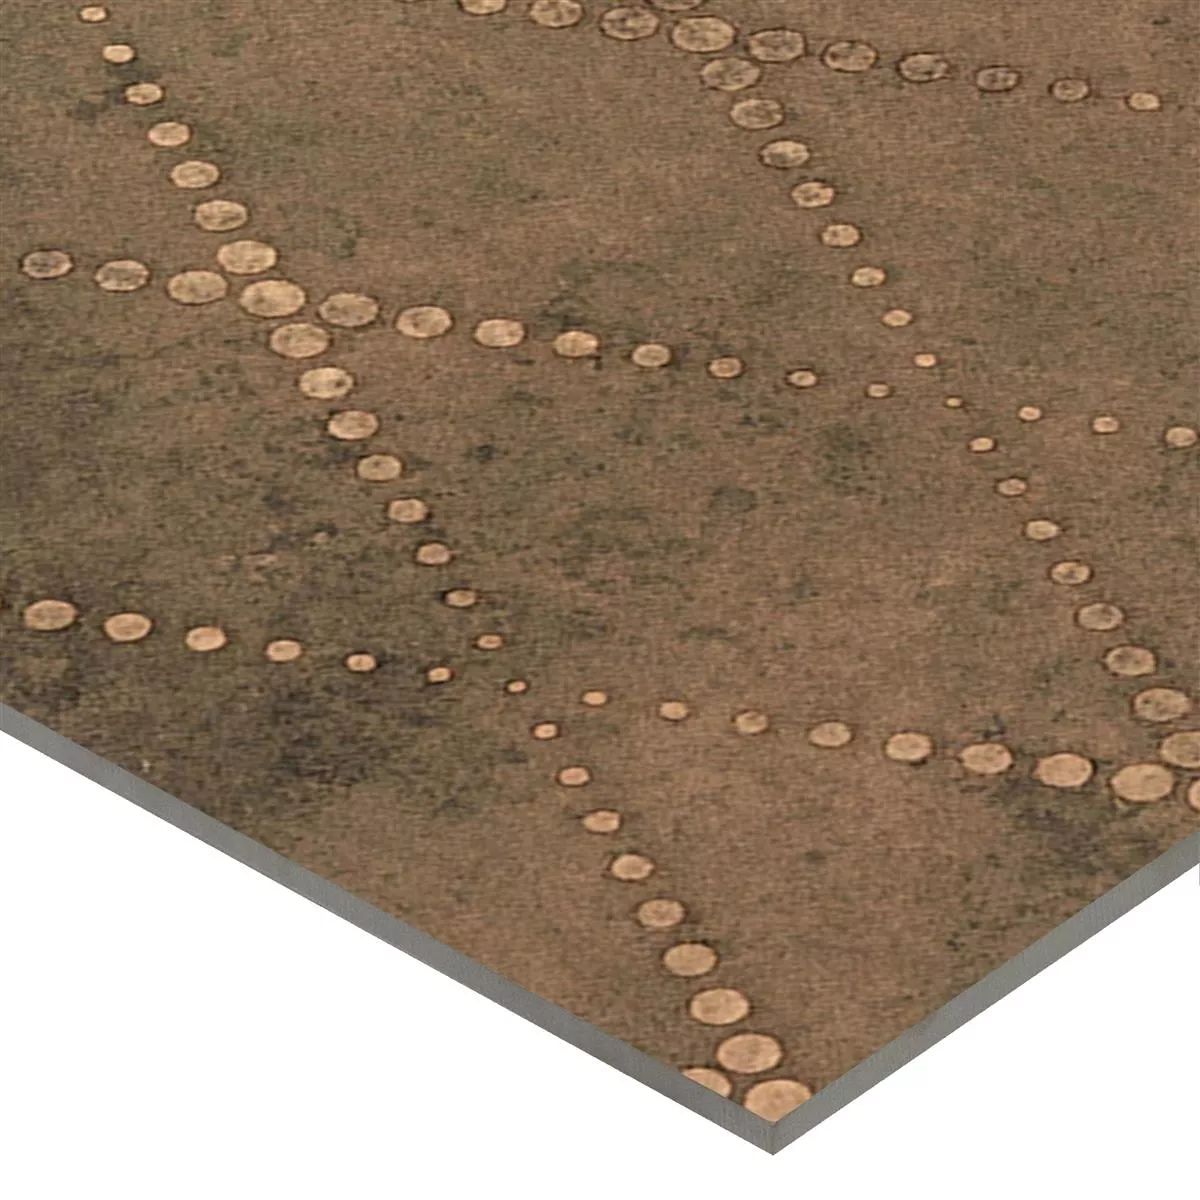 Πλακάκια Δαπέδου Chicago Μεταλλική Εμφάνιση Μπρούντζος R9 - 18,5x18,5cm - 2